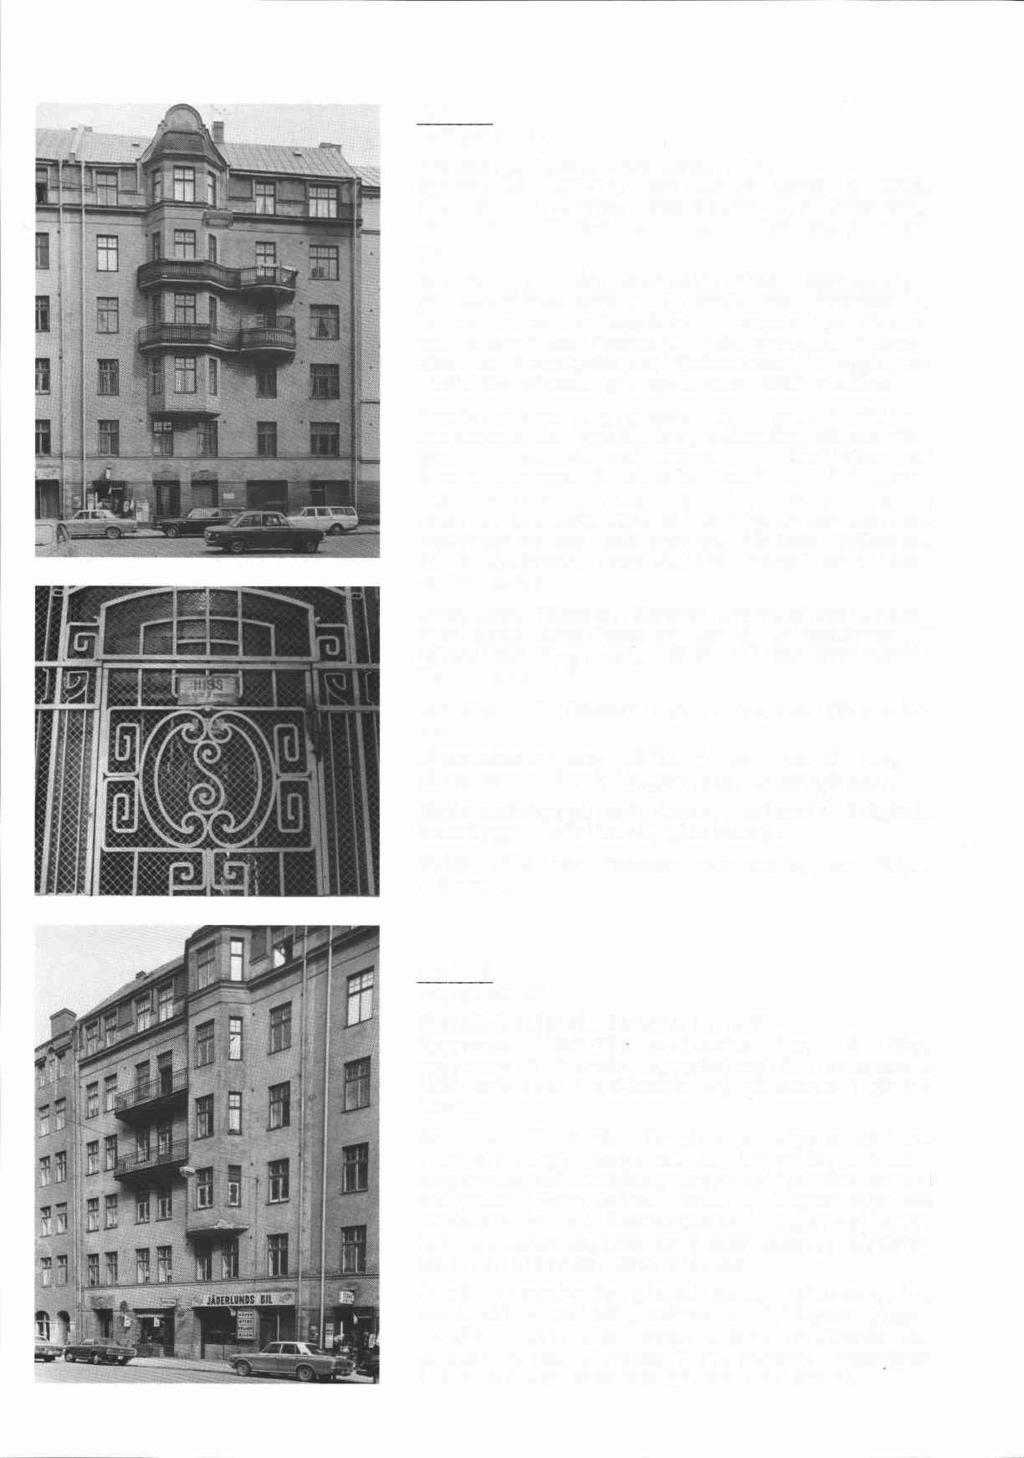 Li- Munin 4 Hagagatan 50 Byggnadsår 1907-12, arkitekter Dorph & Höög, byggherre A Andrée, byggmästare C A Johansson. 1919 dörr i bageri under gård, 1922 bakugn i bageri. Gathus (I), 6 vån.